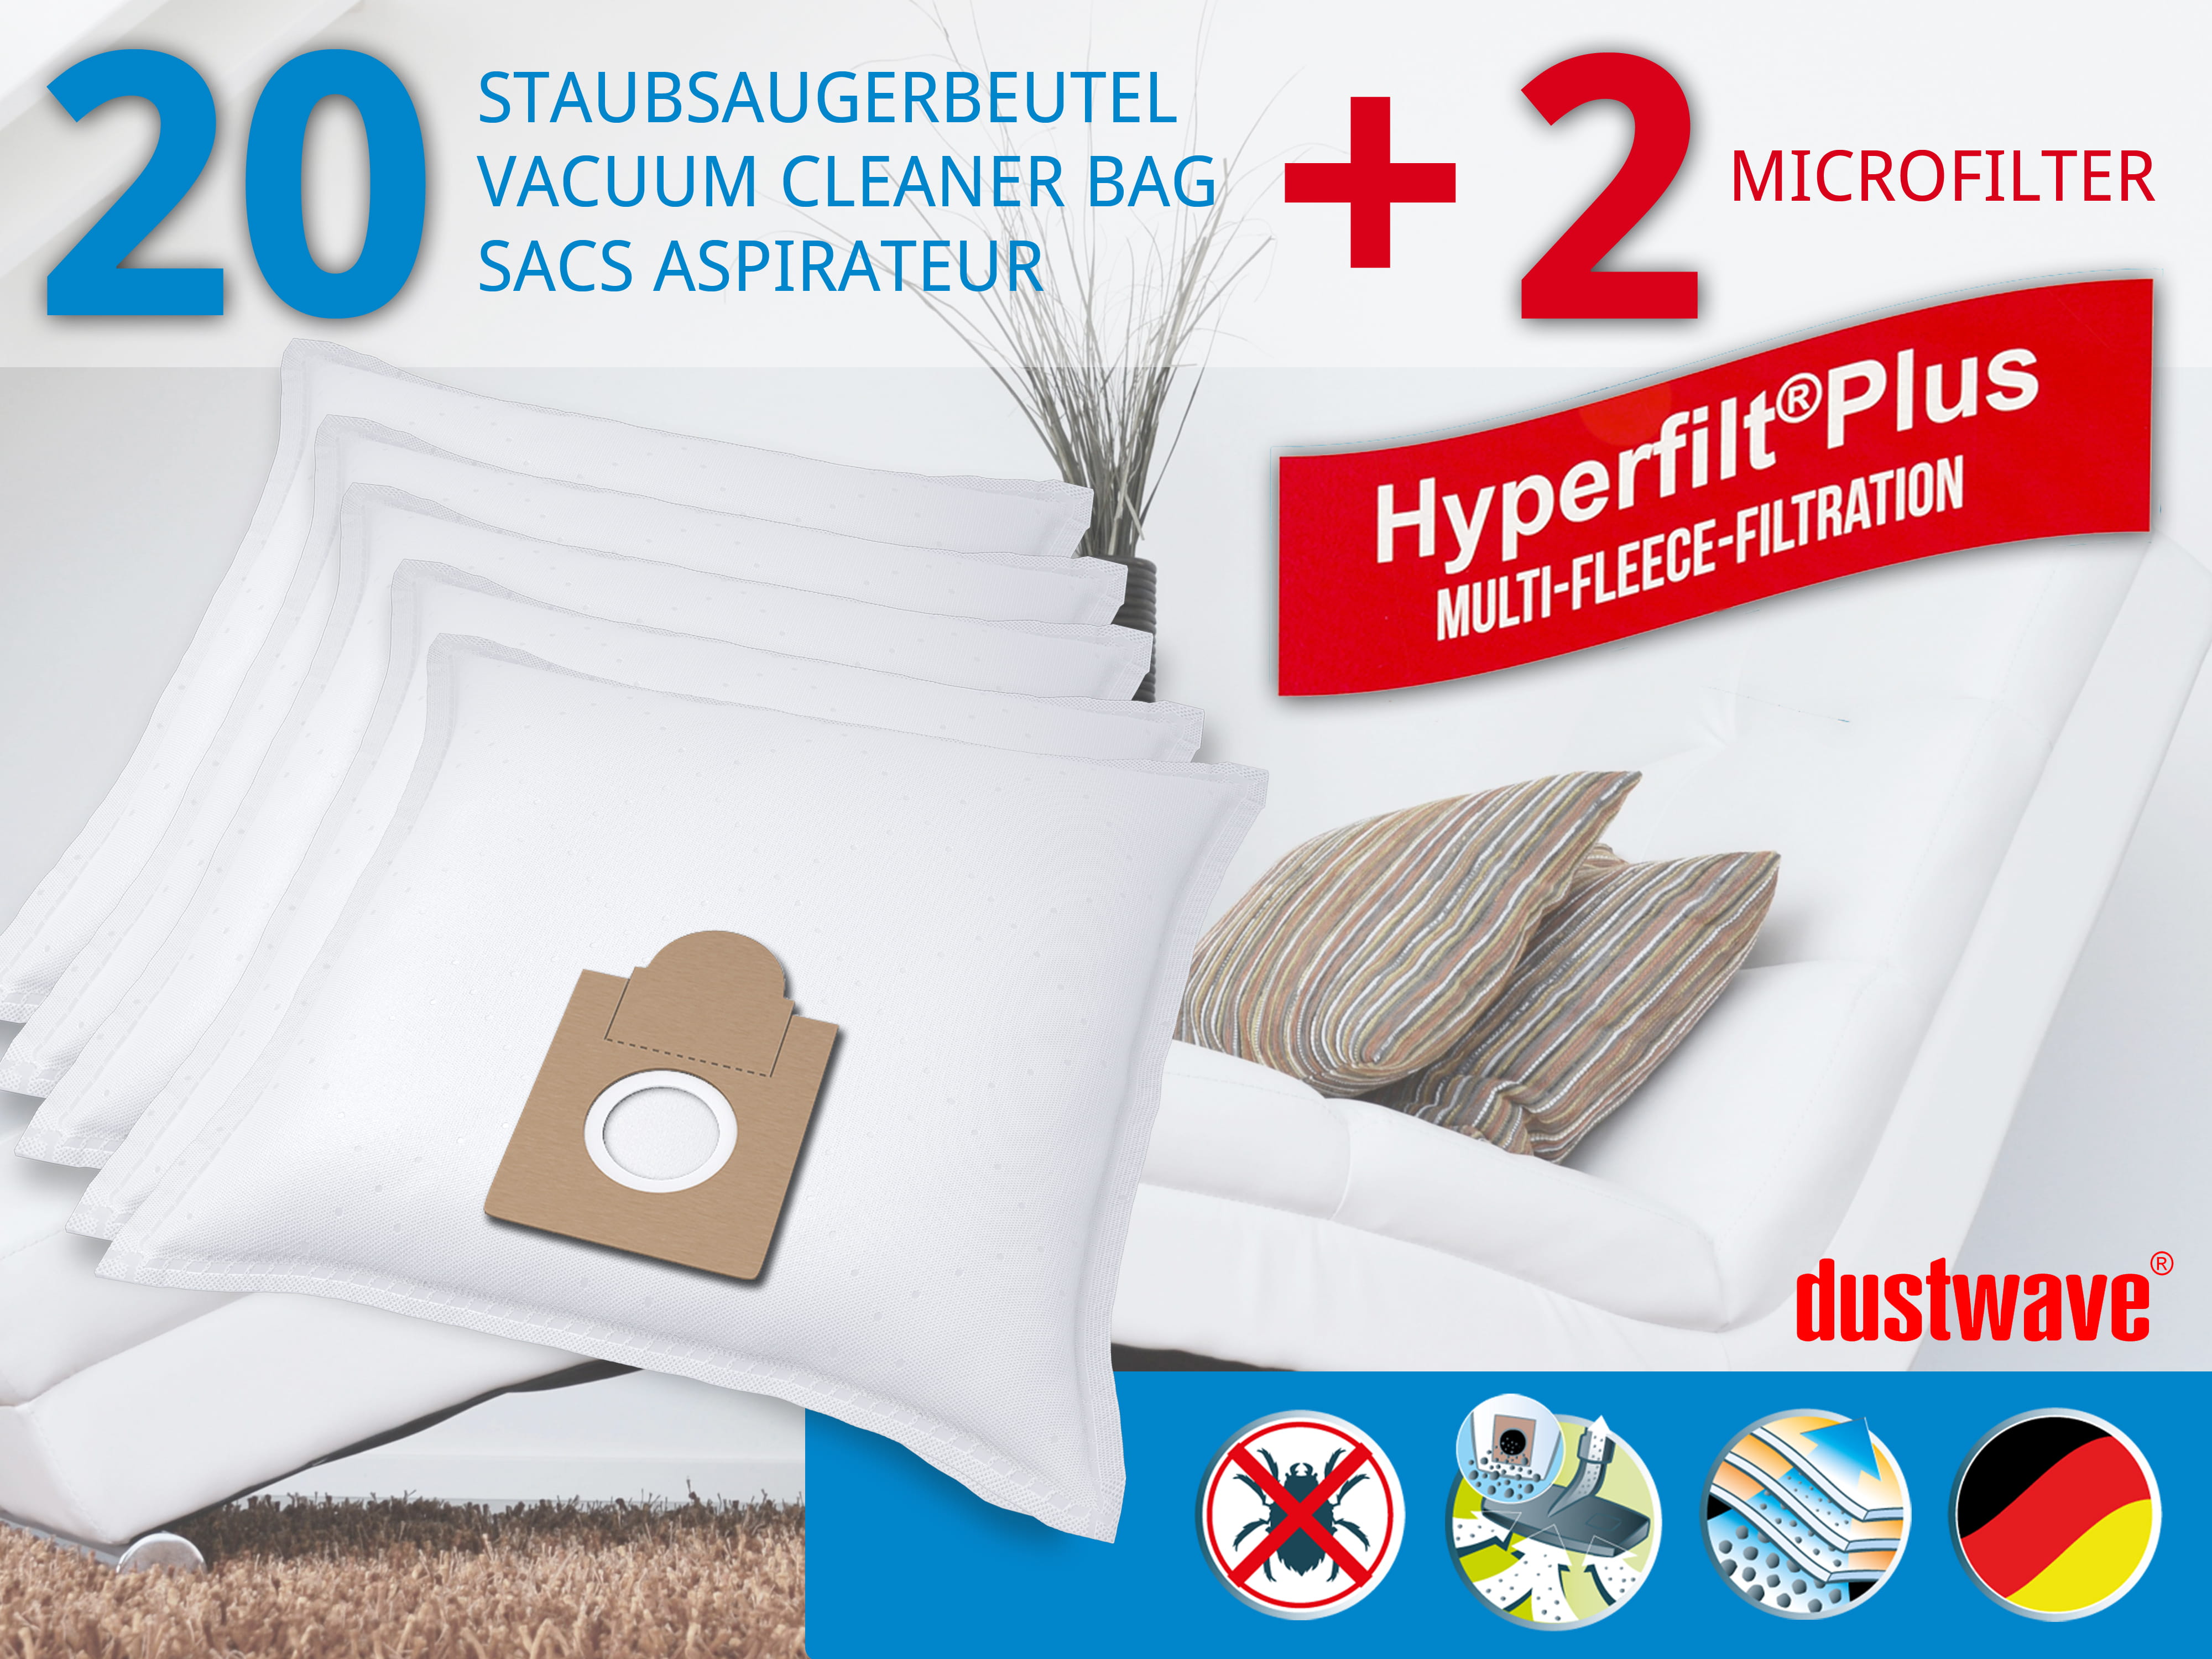 Dustwave® 20 Staubsaugerbeutel für Brinkmann Topline 1300 - hocheffizient, mehrlagiges Mikrovlies mit Hygieneverschluss - Made in Germany